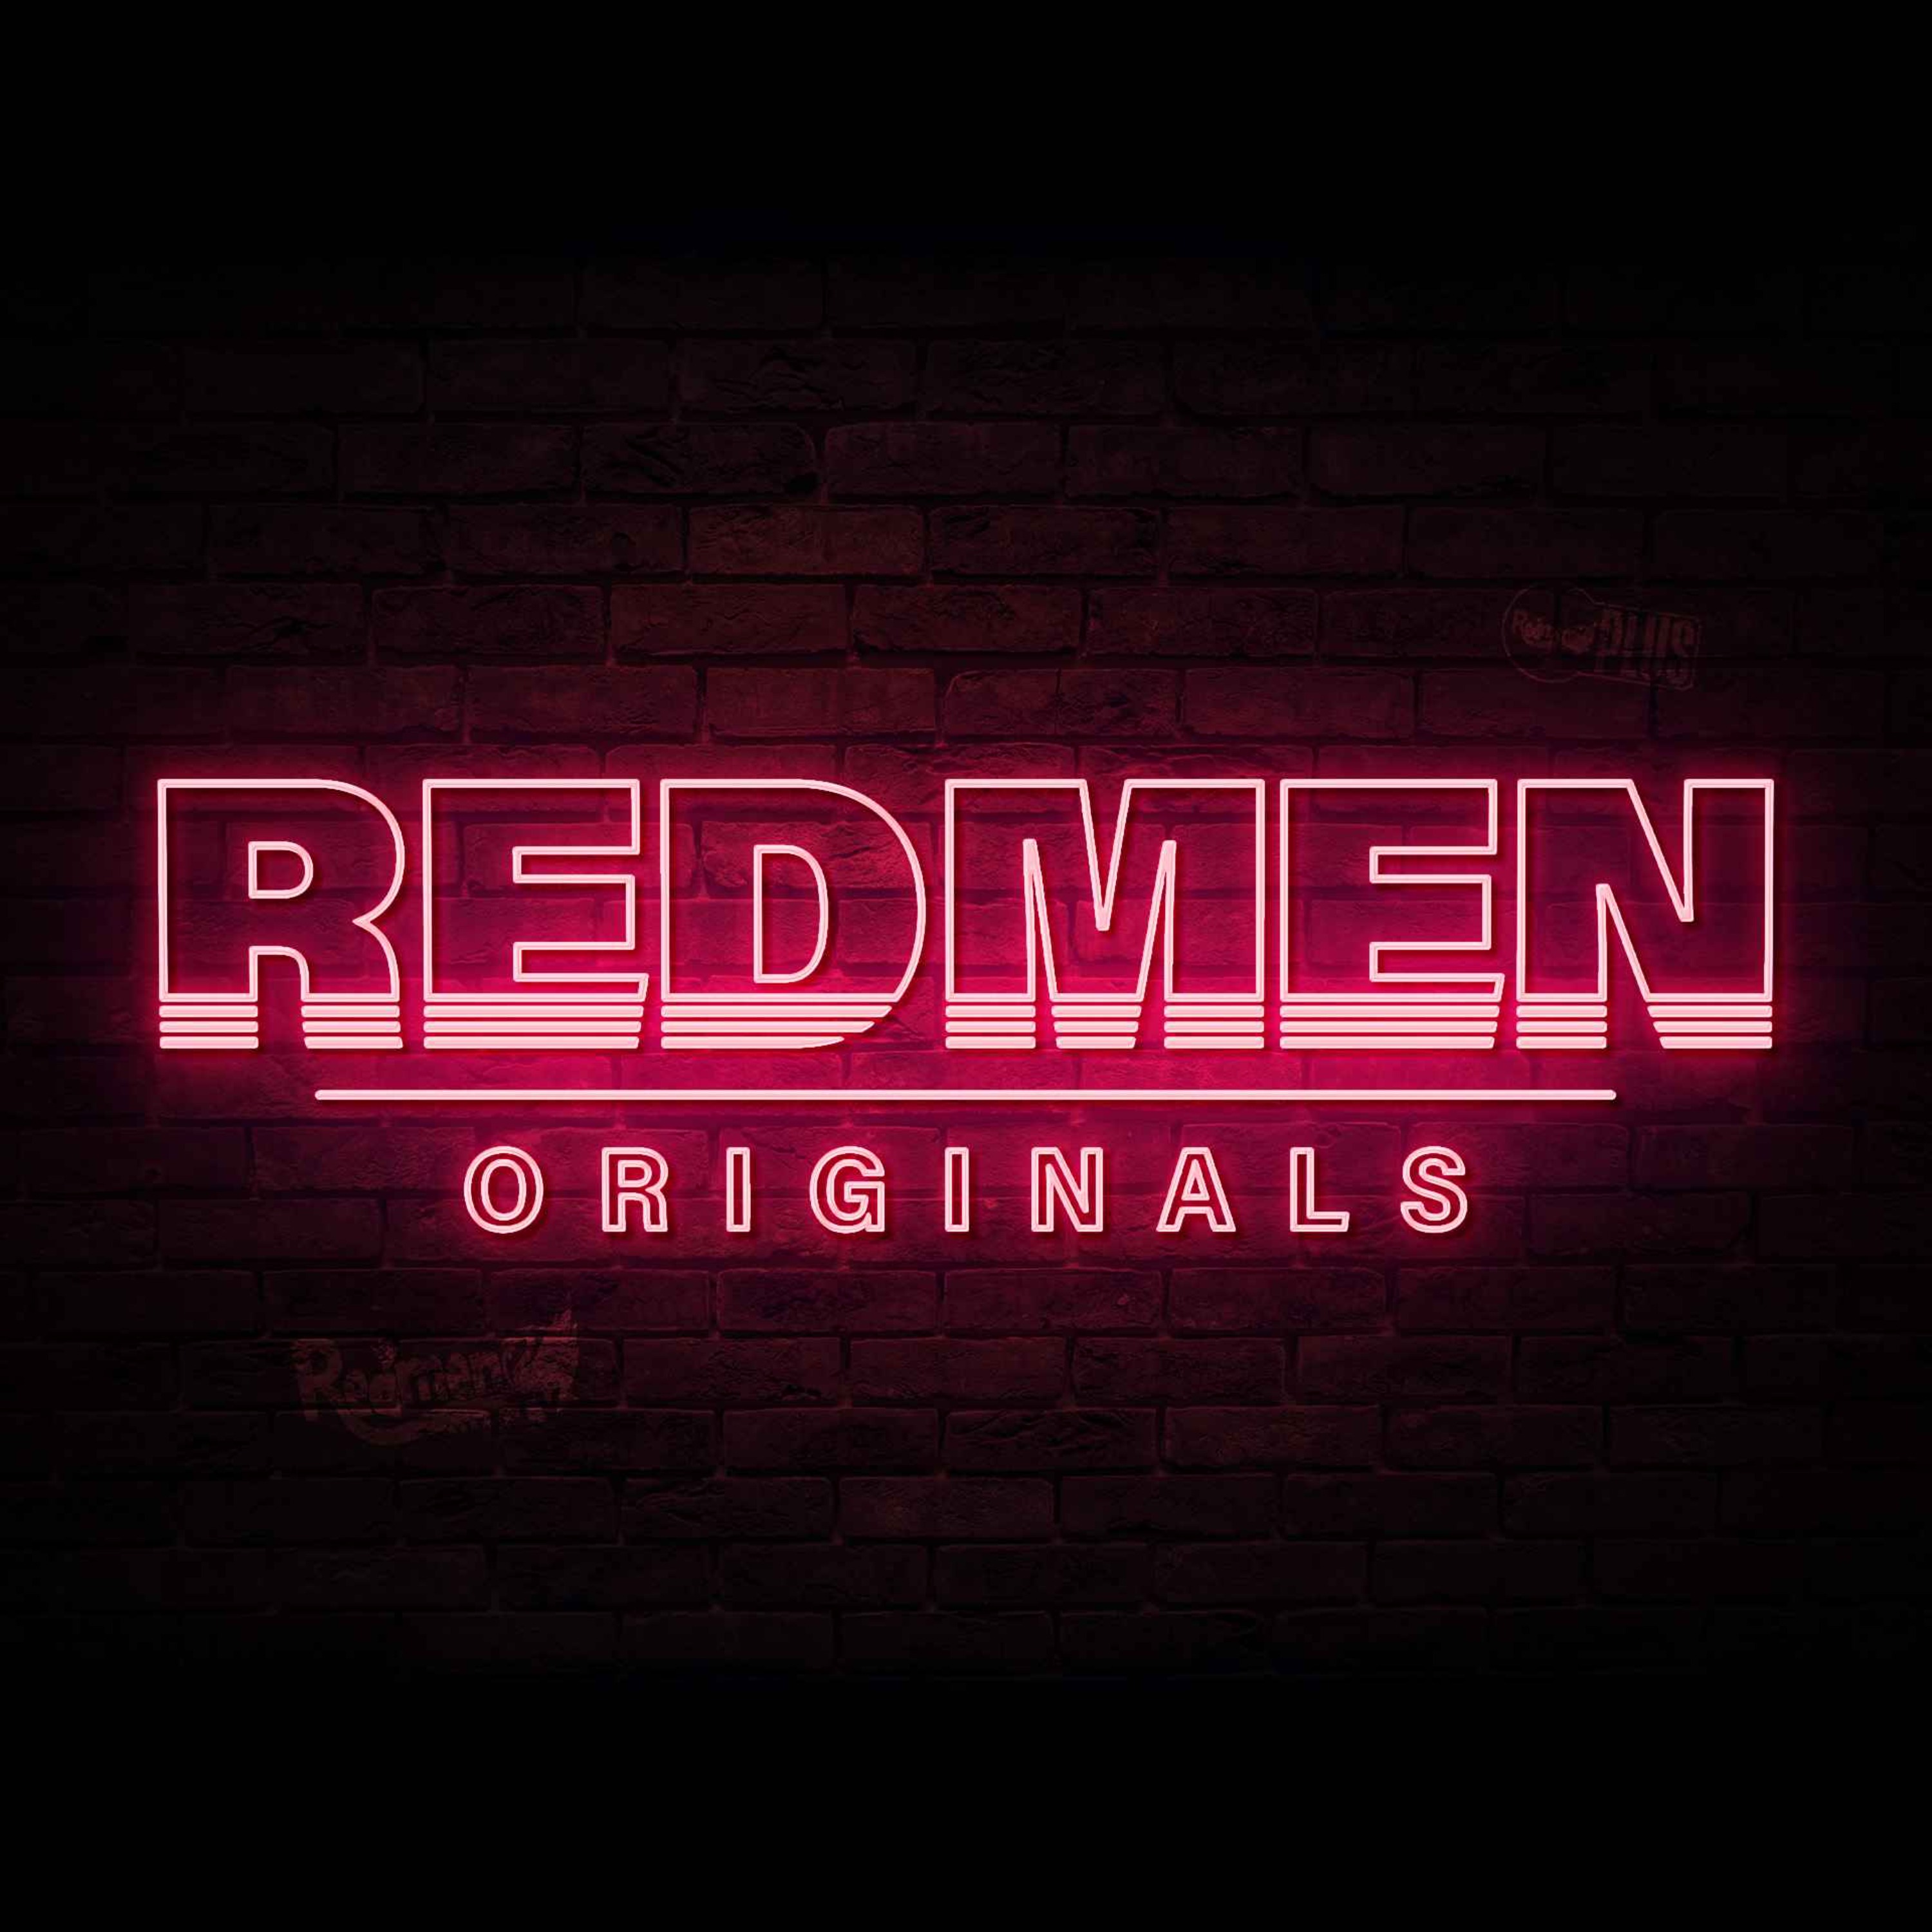 Tom Werner’s American Dream And A Reds Euros Preview | Redmen Originals Liverpool Podcast